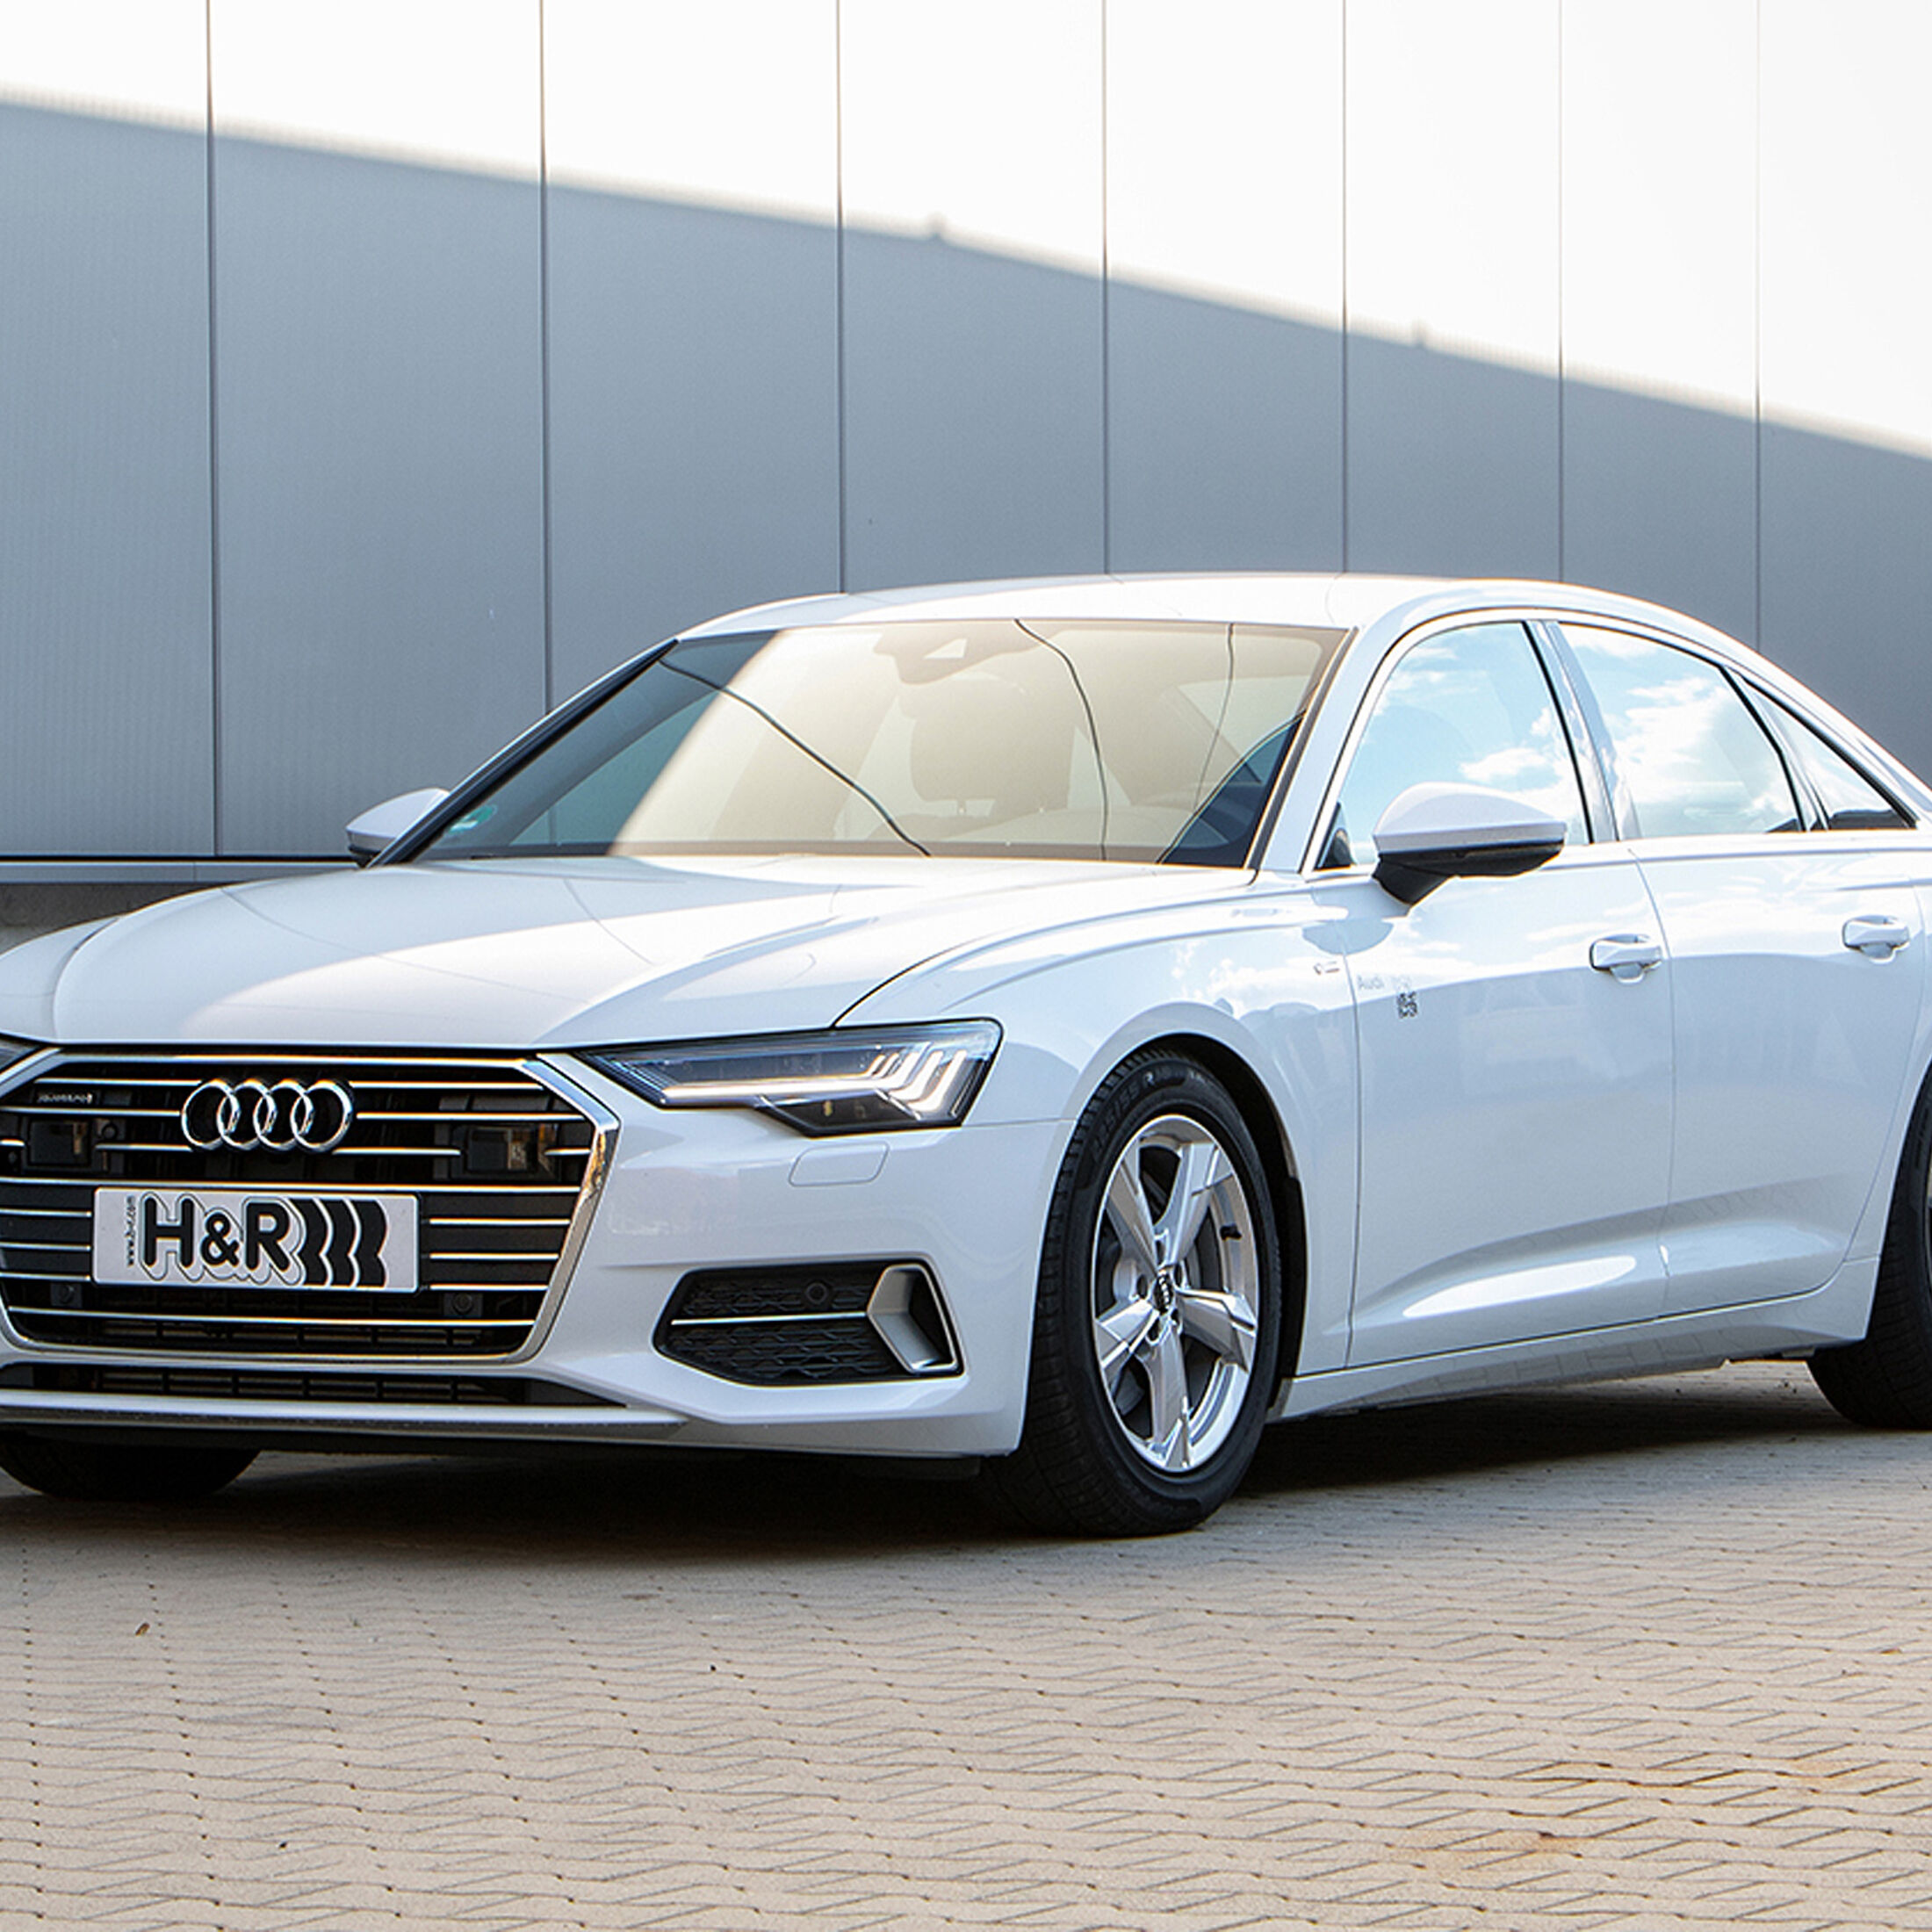 Anzeige: H&R Sportfedern für den neuen Audi A6